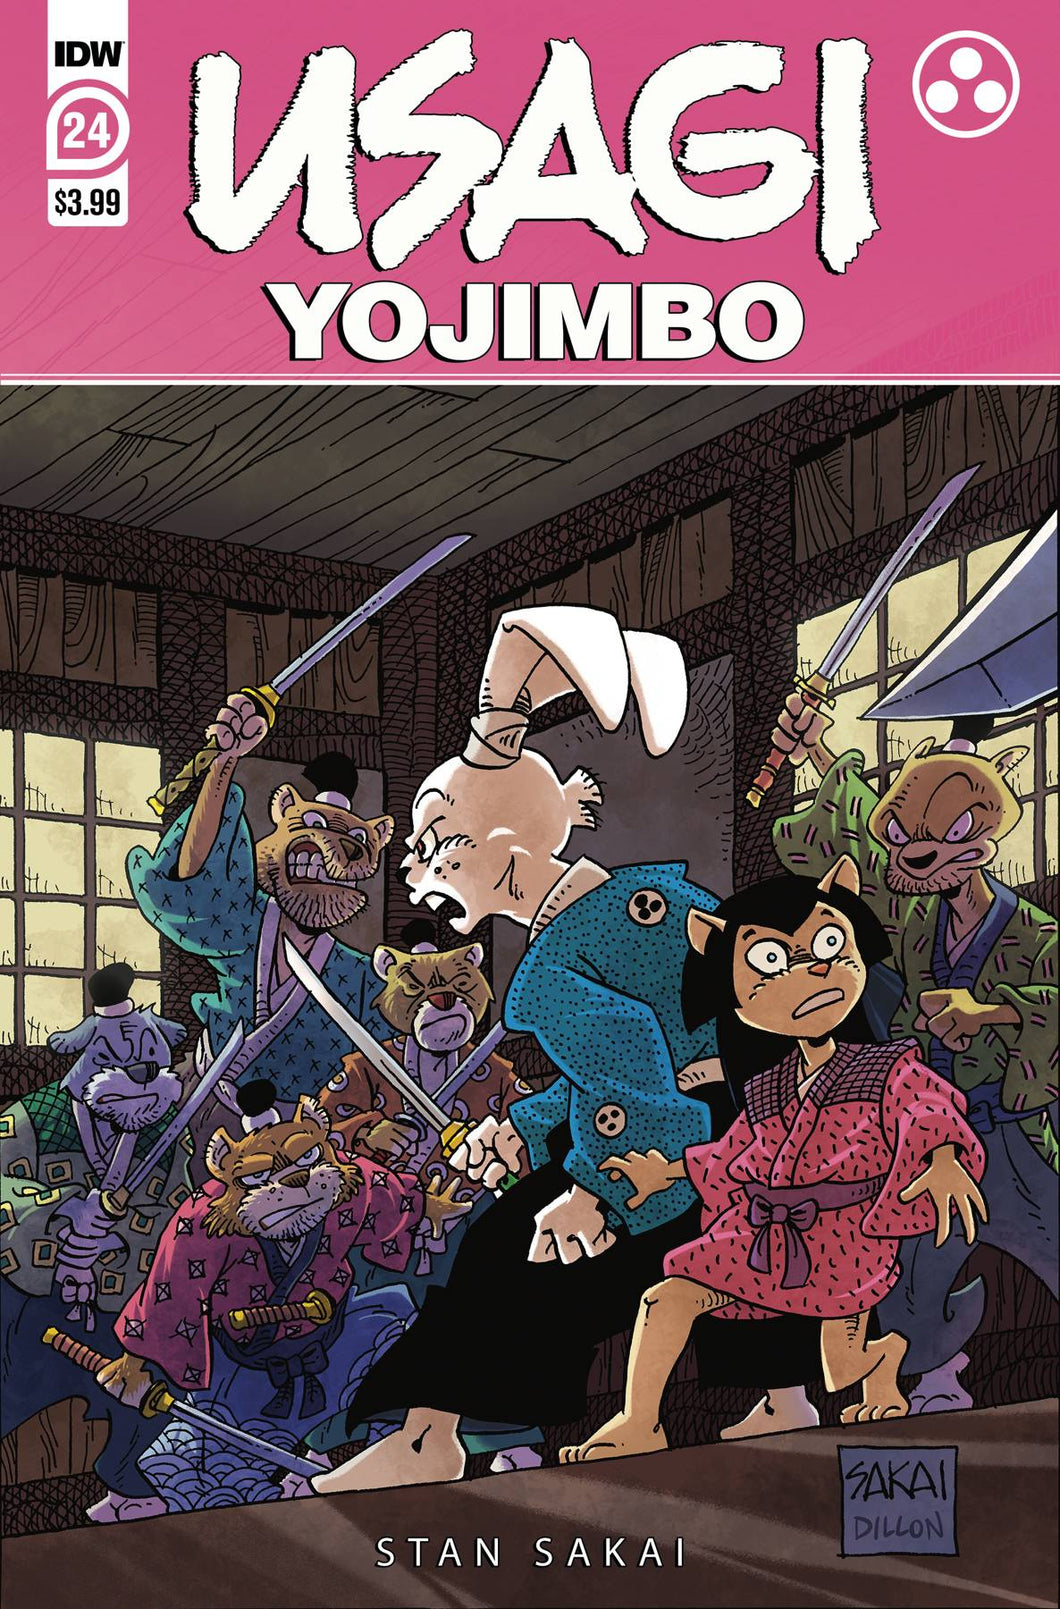 Usagi Yojimbo #24 Cover A